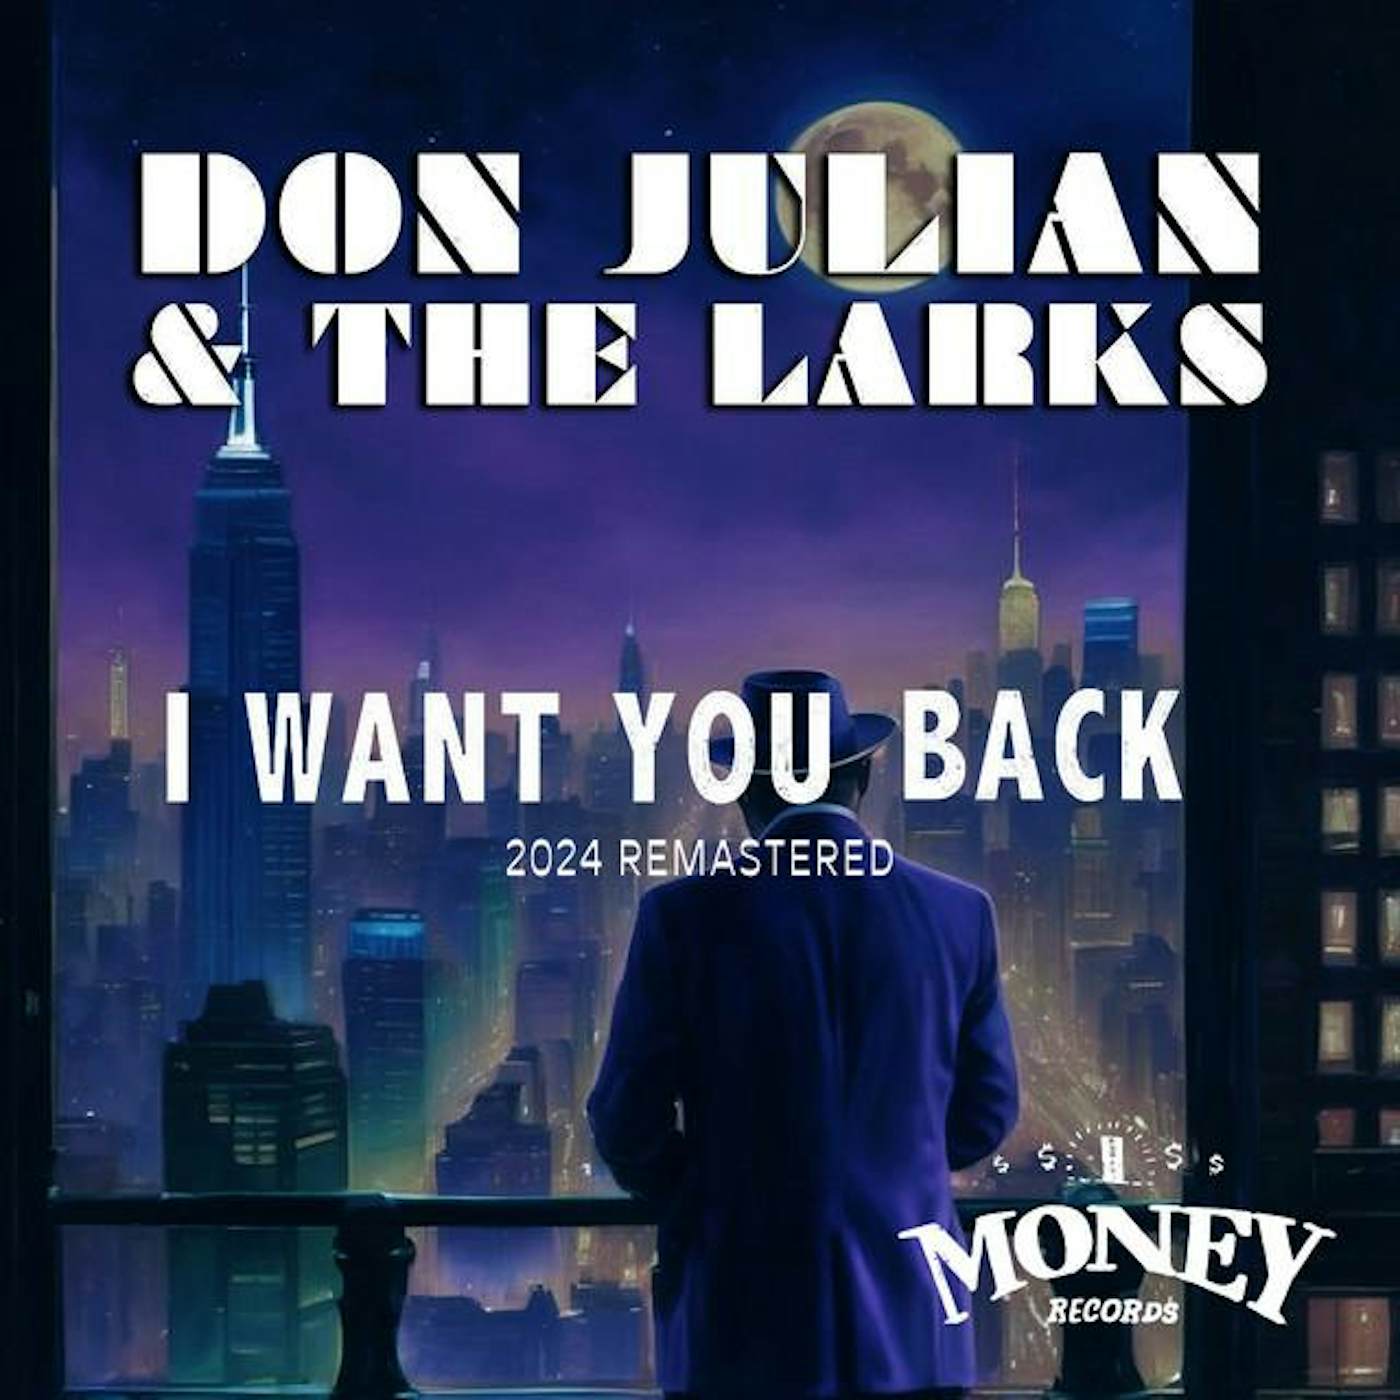 Don Julian & The Larks